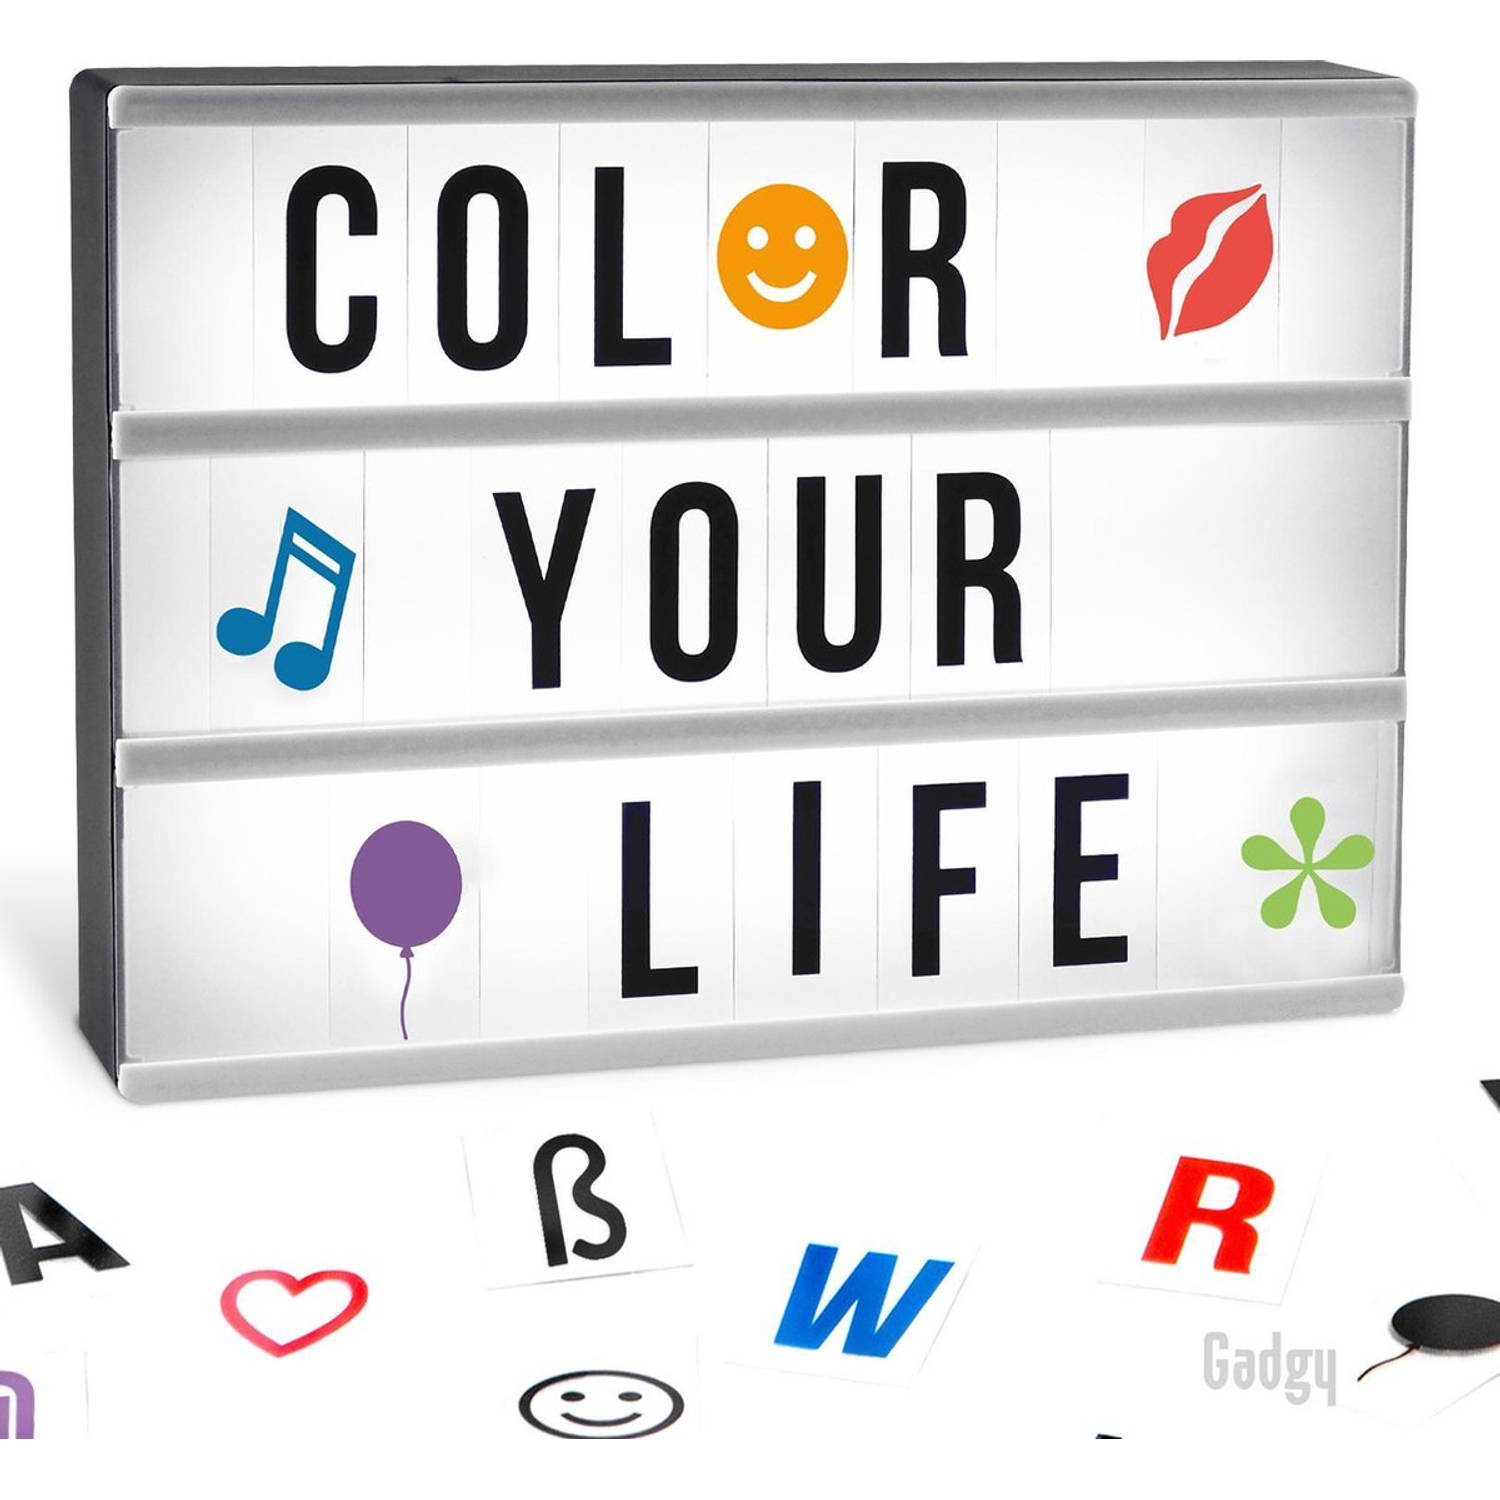 Gadgy Lightbox A4 met 4 achtergronden + 85 letters/symbolen + 40 emojis + 6 woorden + USB kabel – 30 x 22 x 6 cm.